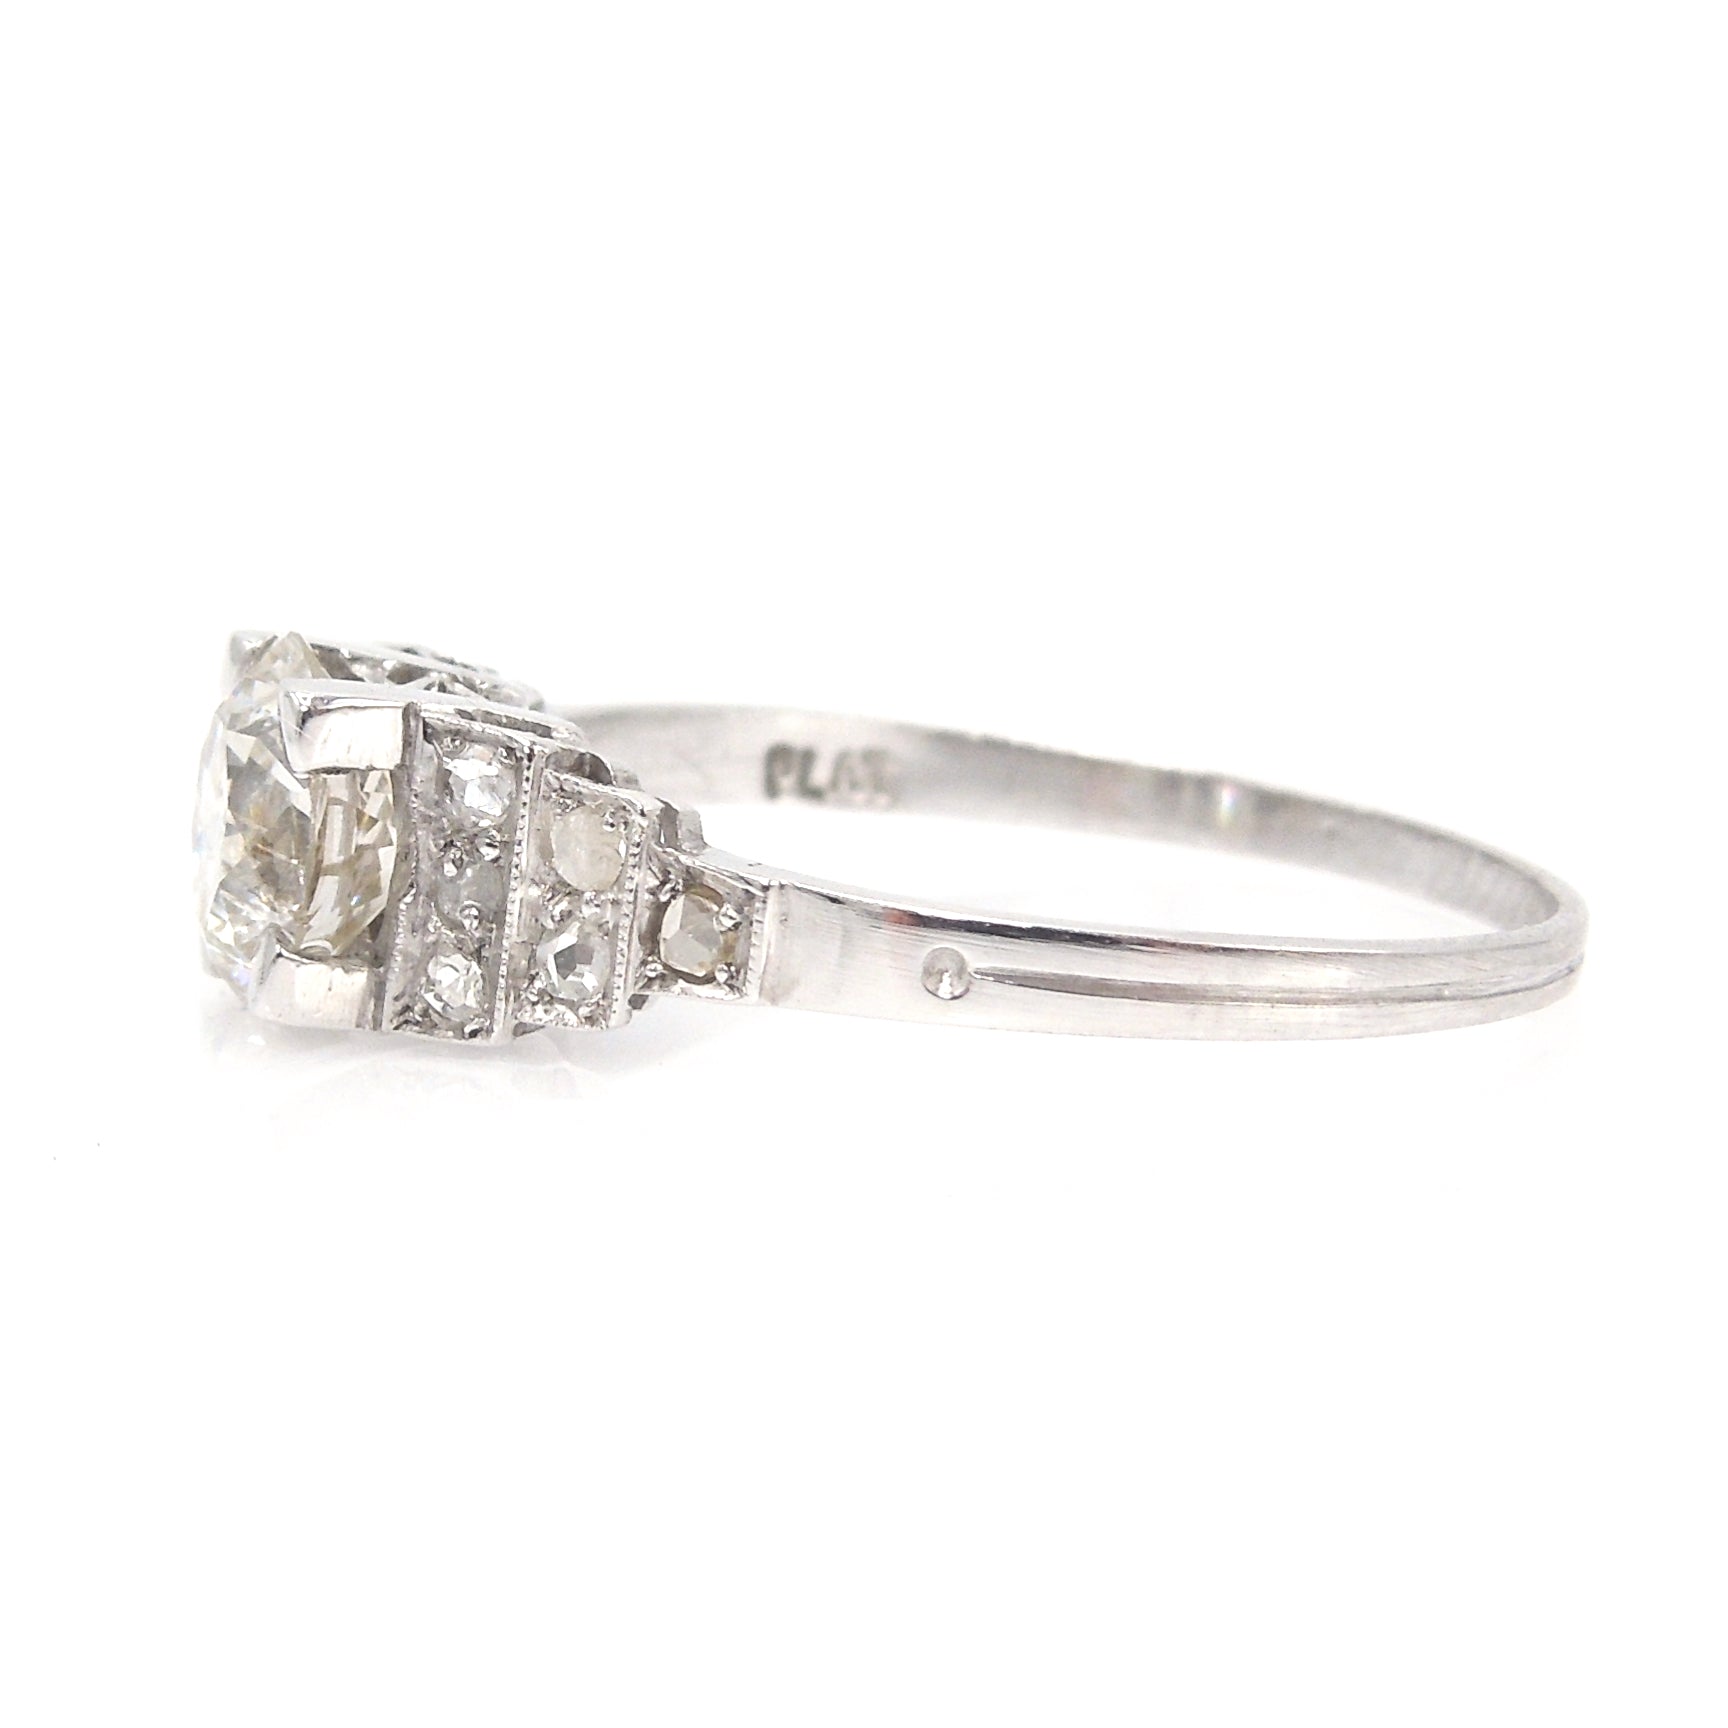 Antique Art Deco Stepped Design 1 Carat Diamond Ring in Platinum